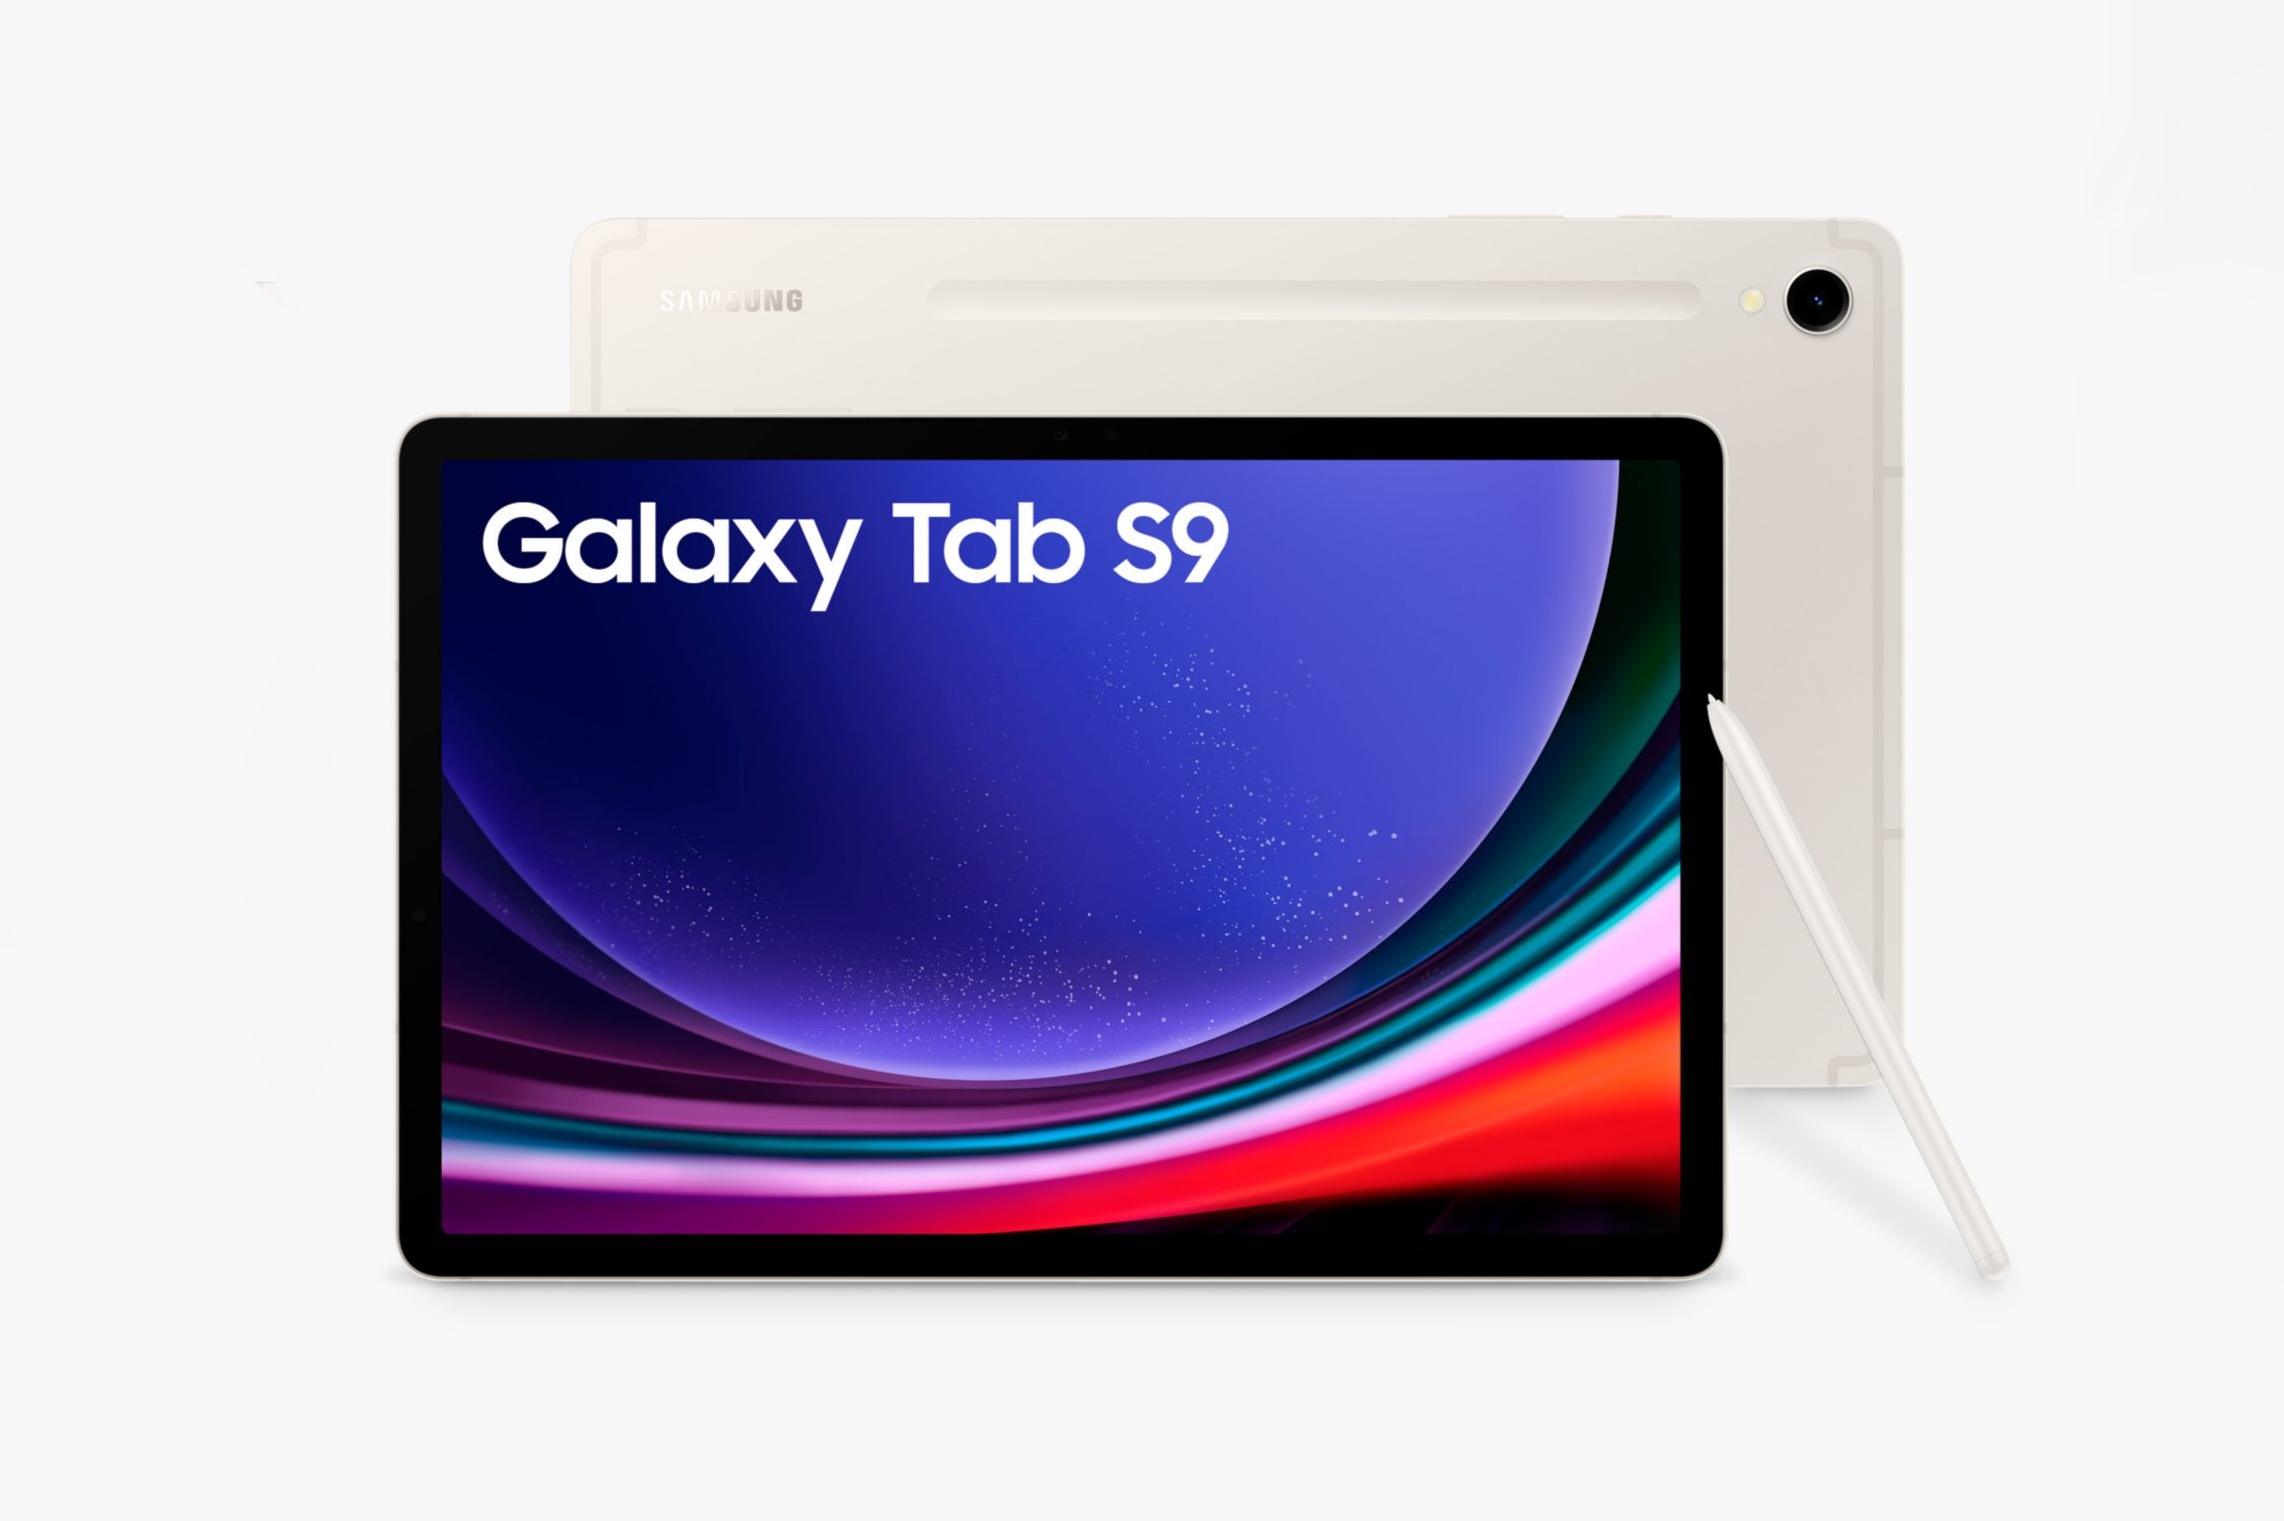 Samsung Galaxy Tab S9 è disponibile su Amazon con uno sconto fino a 84 euro